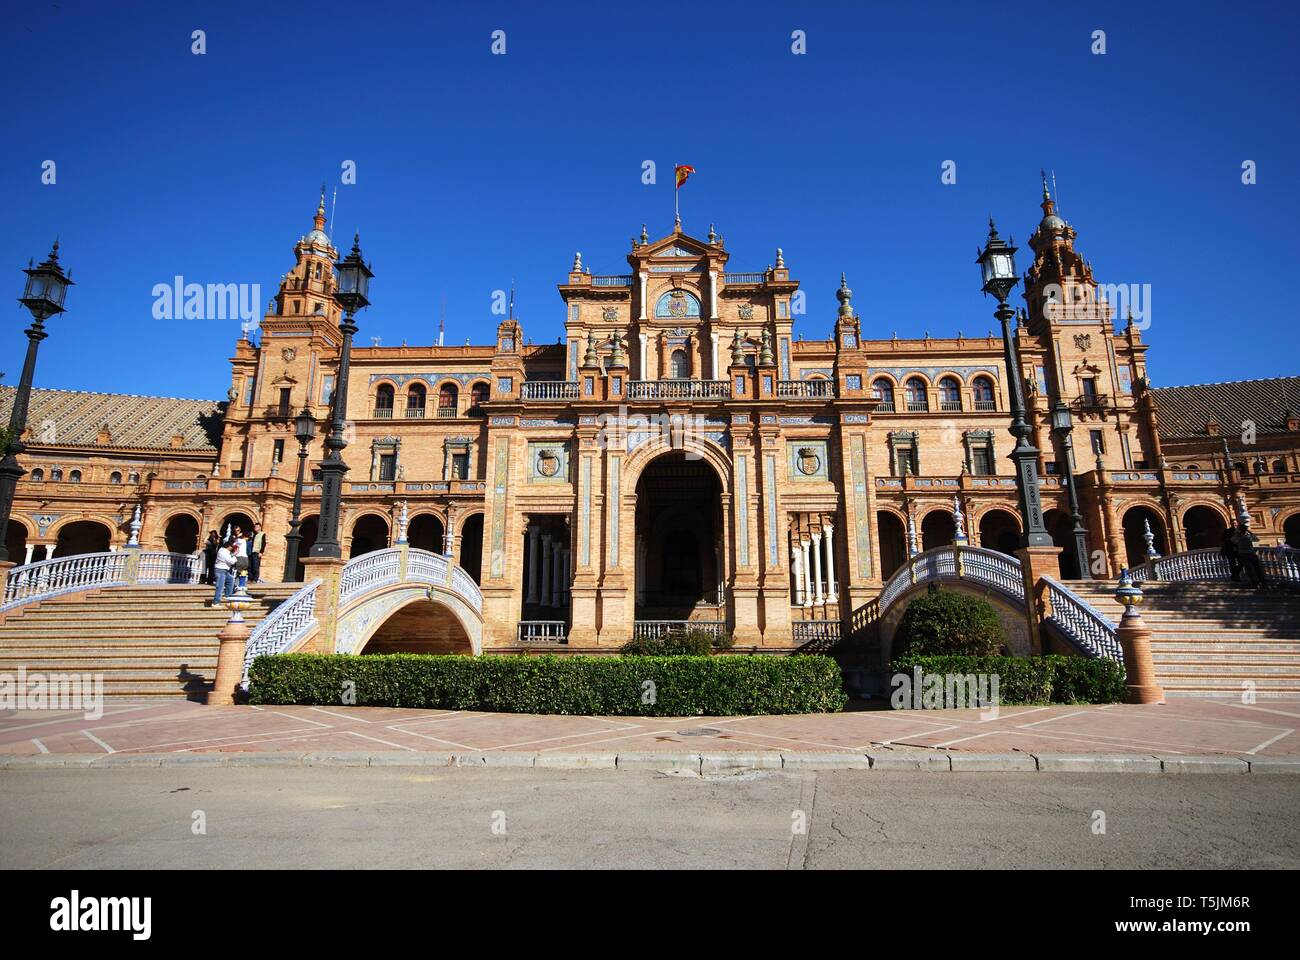 Ansicht des zentralen Gebäudes in der Plaza de Espana mit Stege im Vordergrund, Provinz Sevilla, Sevilla, Spanien. Stockfoto